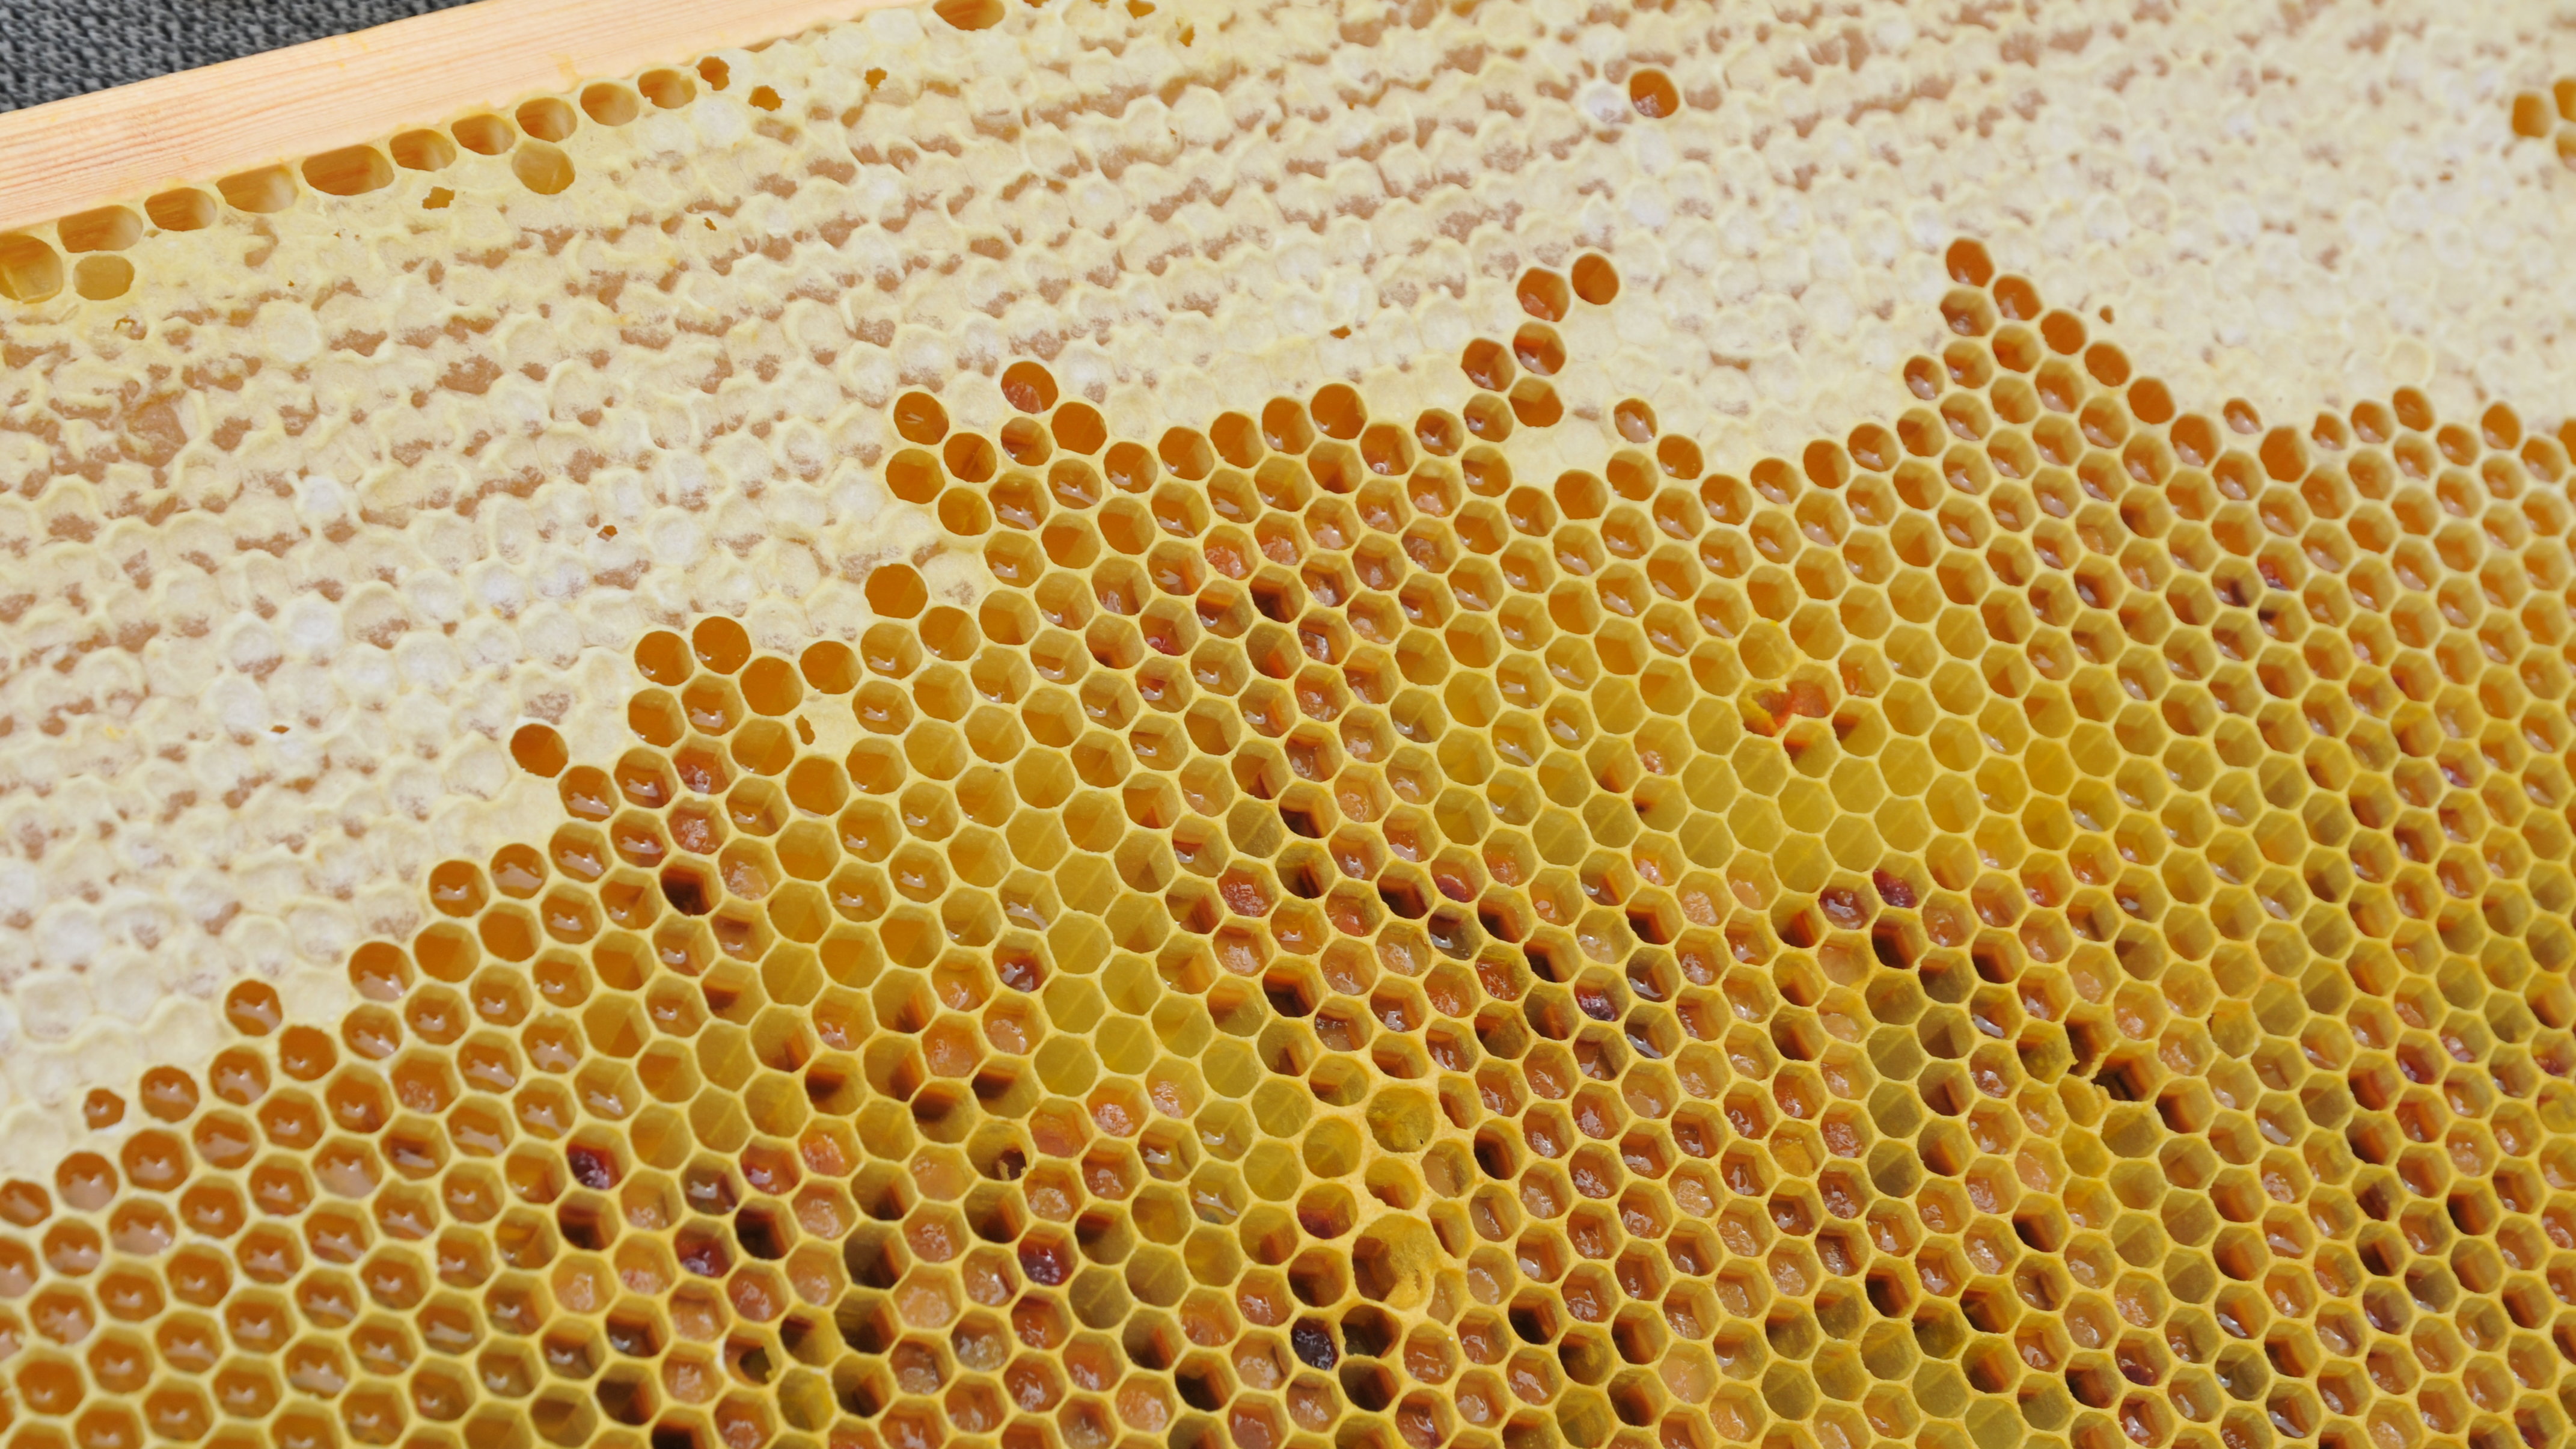 Fotoaufnahme einer Wabenwand, die aus einem Bienenstock genommen wurde. Die Waben aus Wachs sind zum Teil mit Honig gefüllt. 